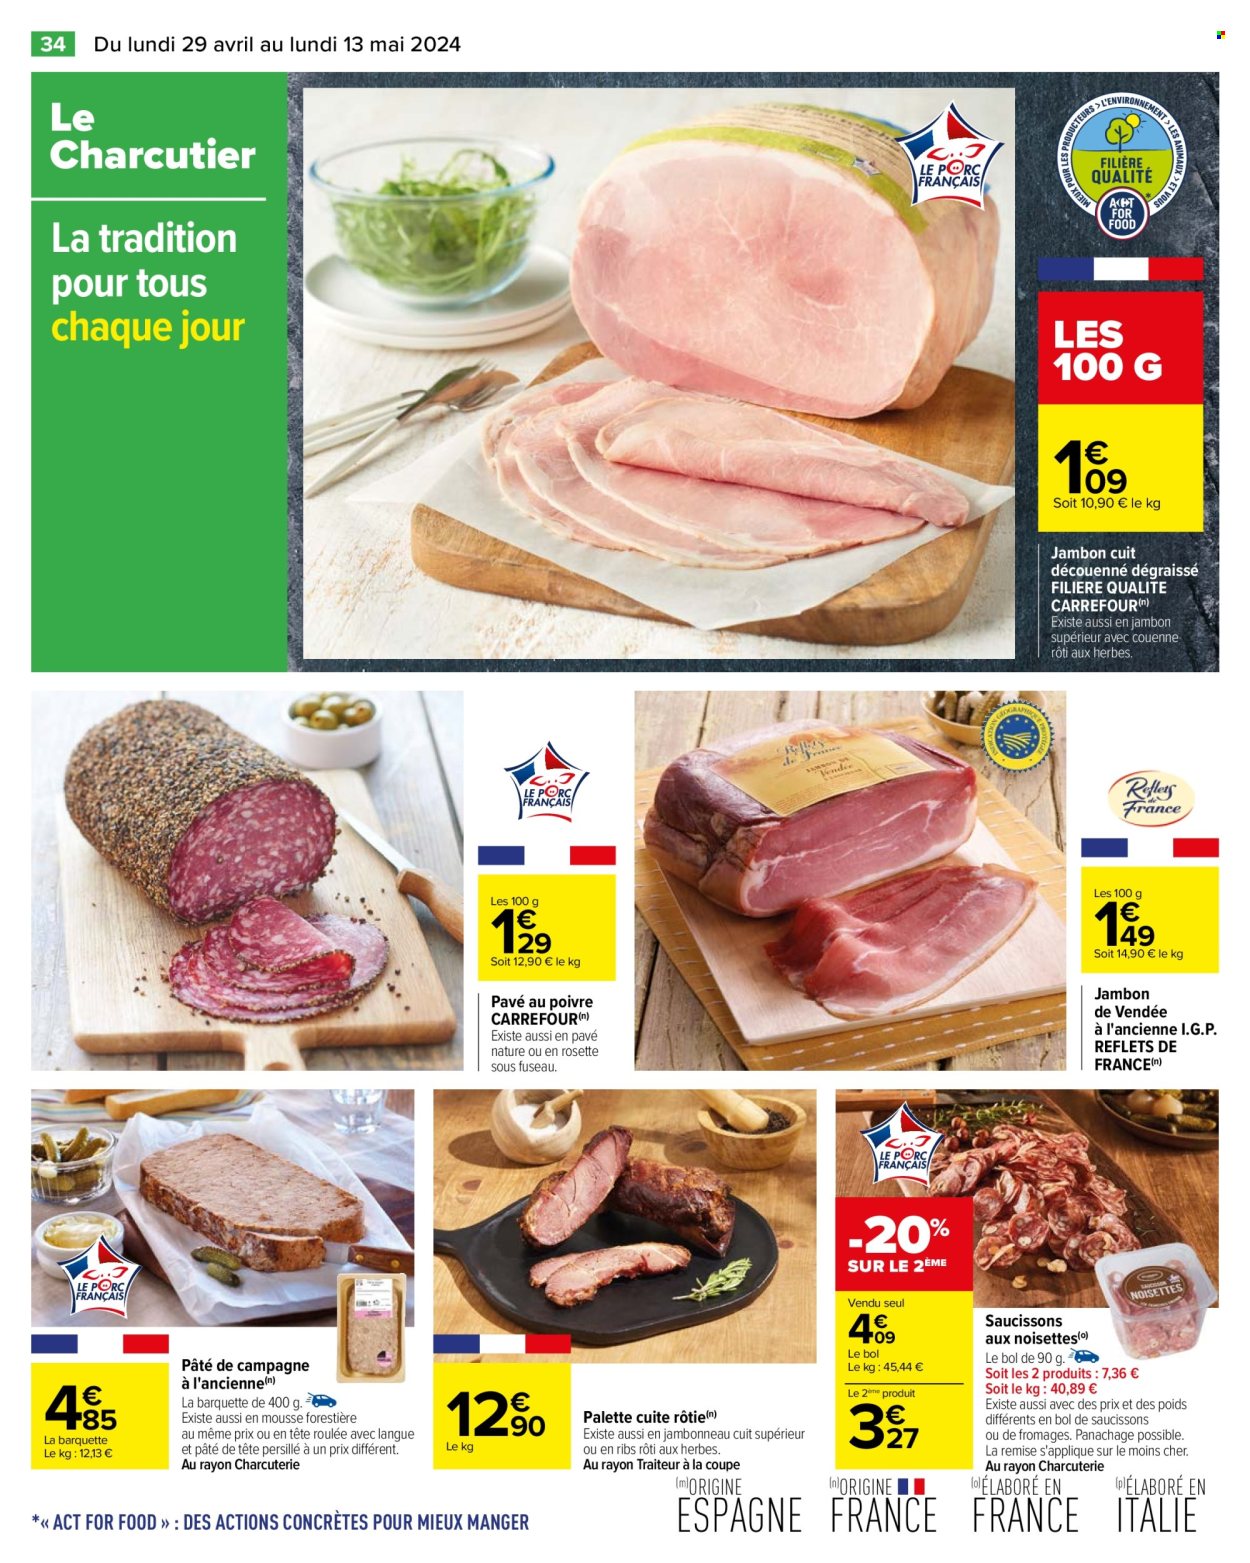 thumbnail - Catalogue Carrefour Hypermarchés - 29/04/2024 - 13/05/2024 - Produits soldés - jambon, pâté de campagne, Palette, saucisson. Page 38.